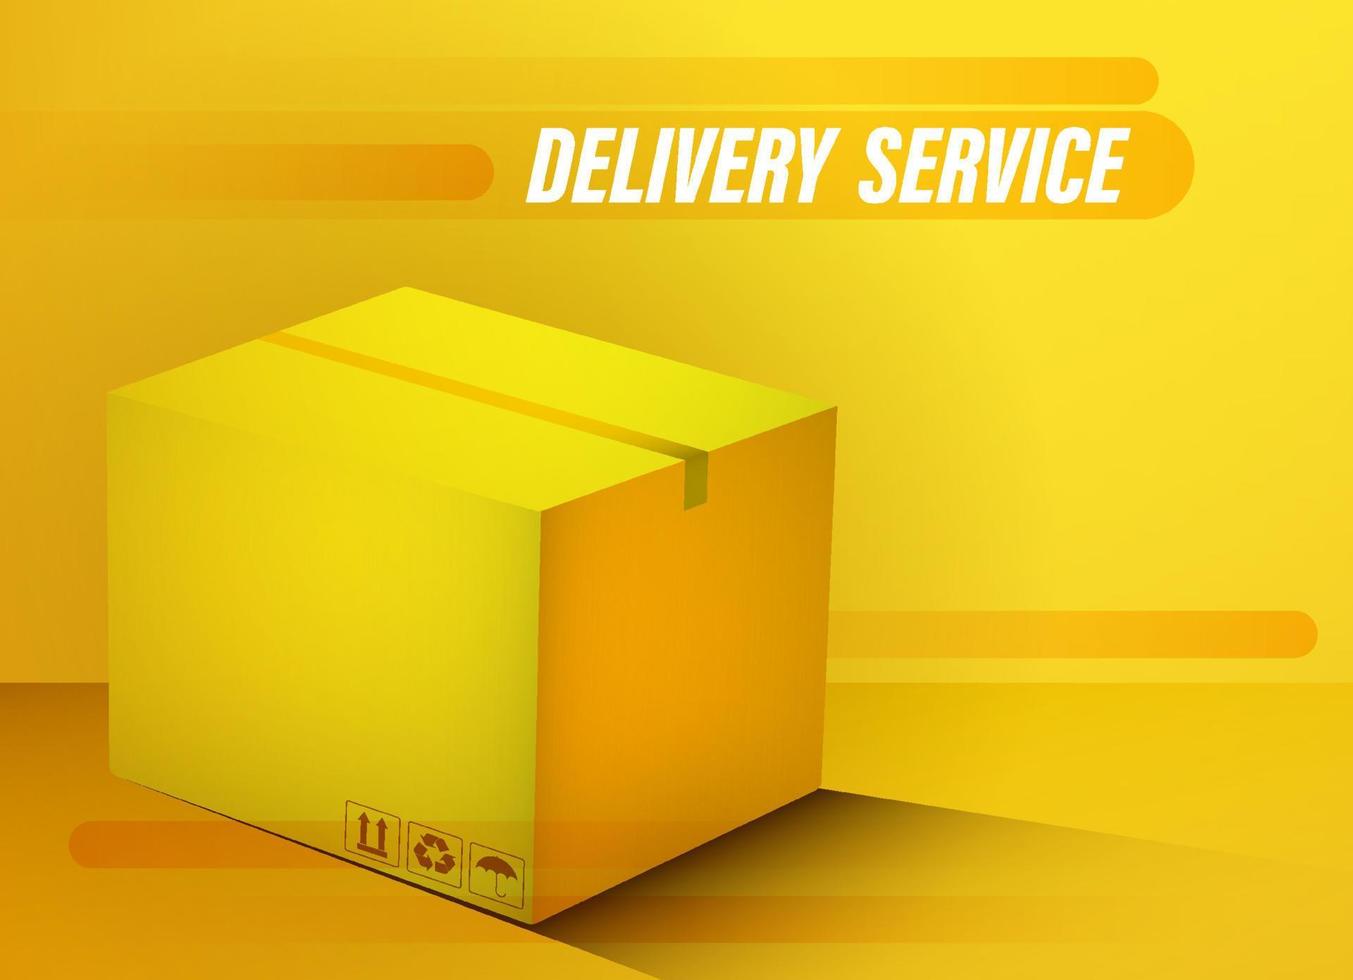 snelle levering en transport van goederen uit winkels. online bestelling. realistische gesloten kartonnen doos. concept voor een website. kleur vector